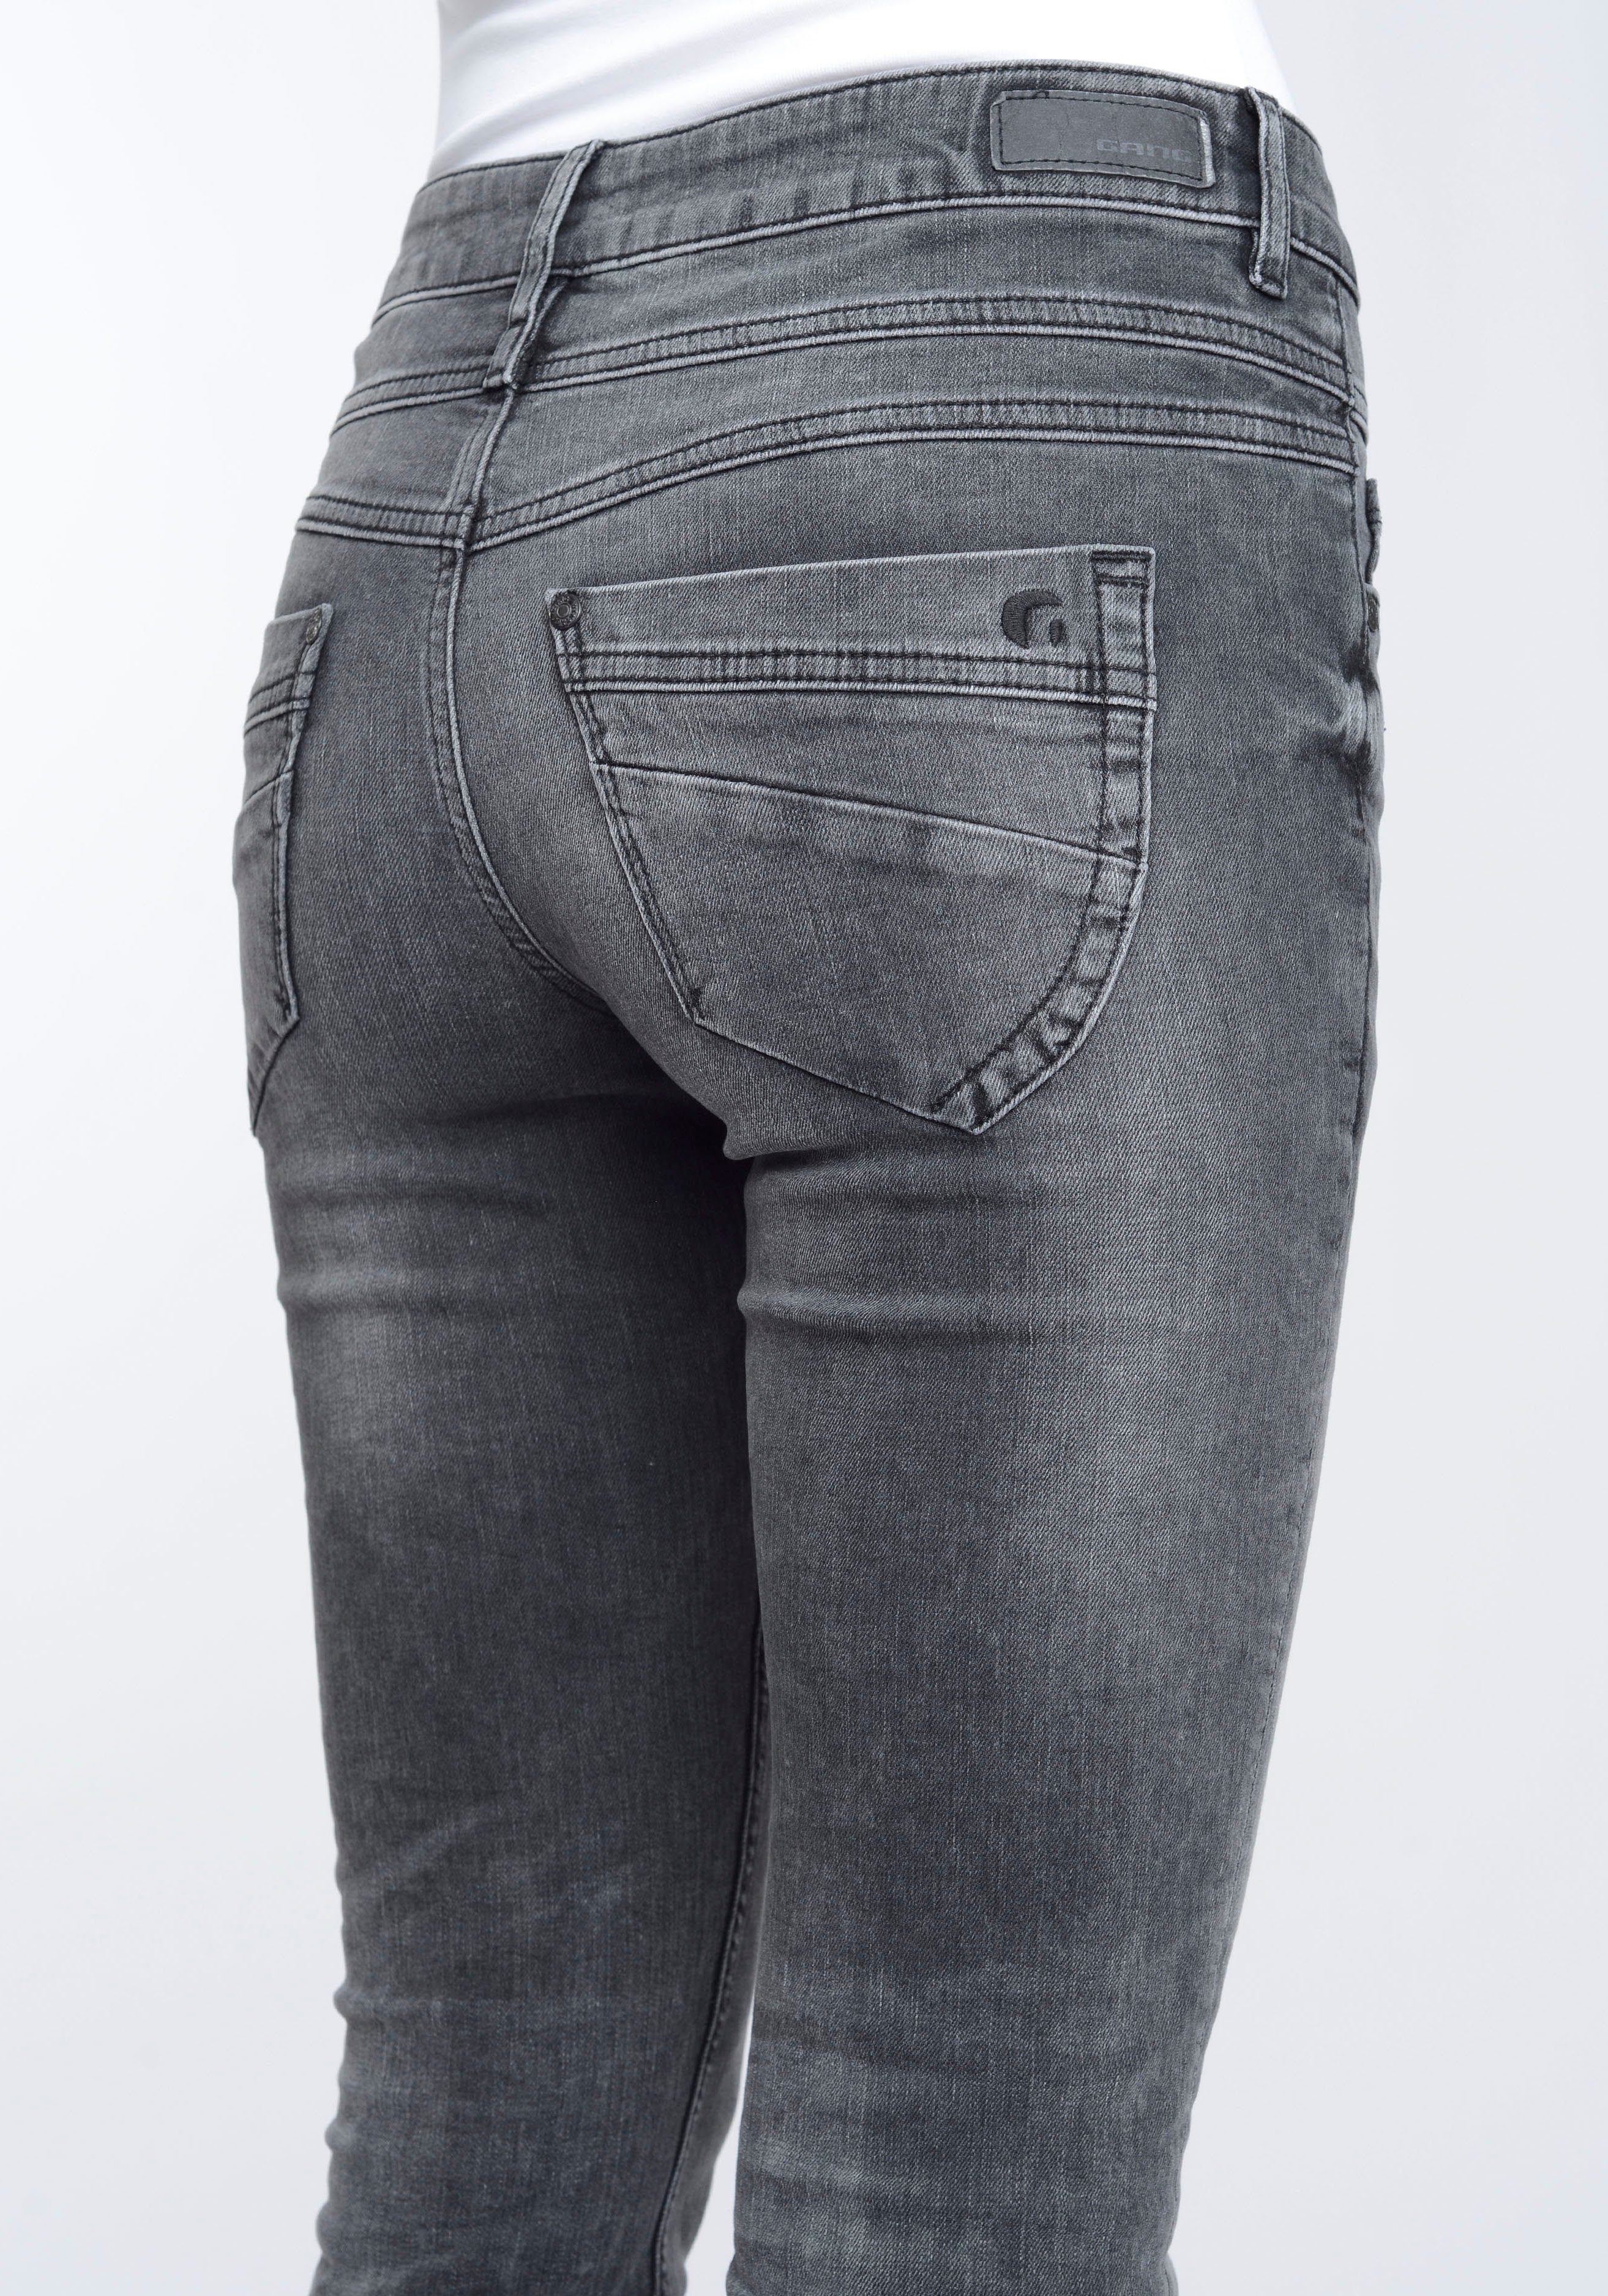 GANG Skinny-fit-Jeans 94MORA vorne und used Passe mit black 3-Knopf-Verschluss